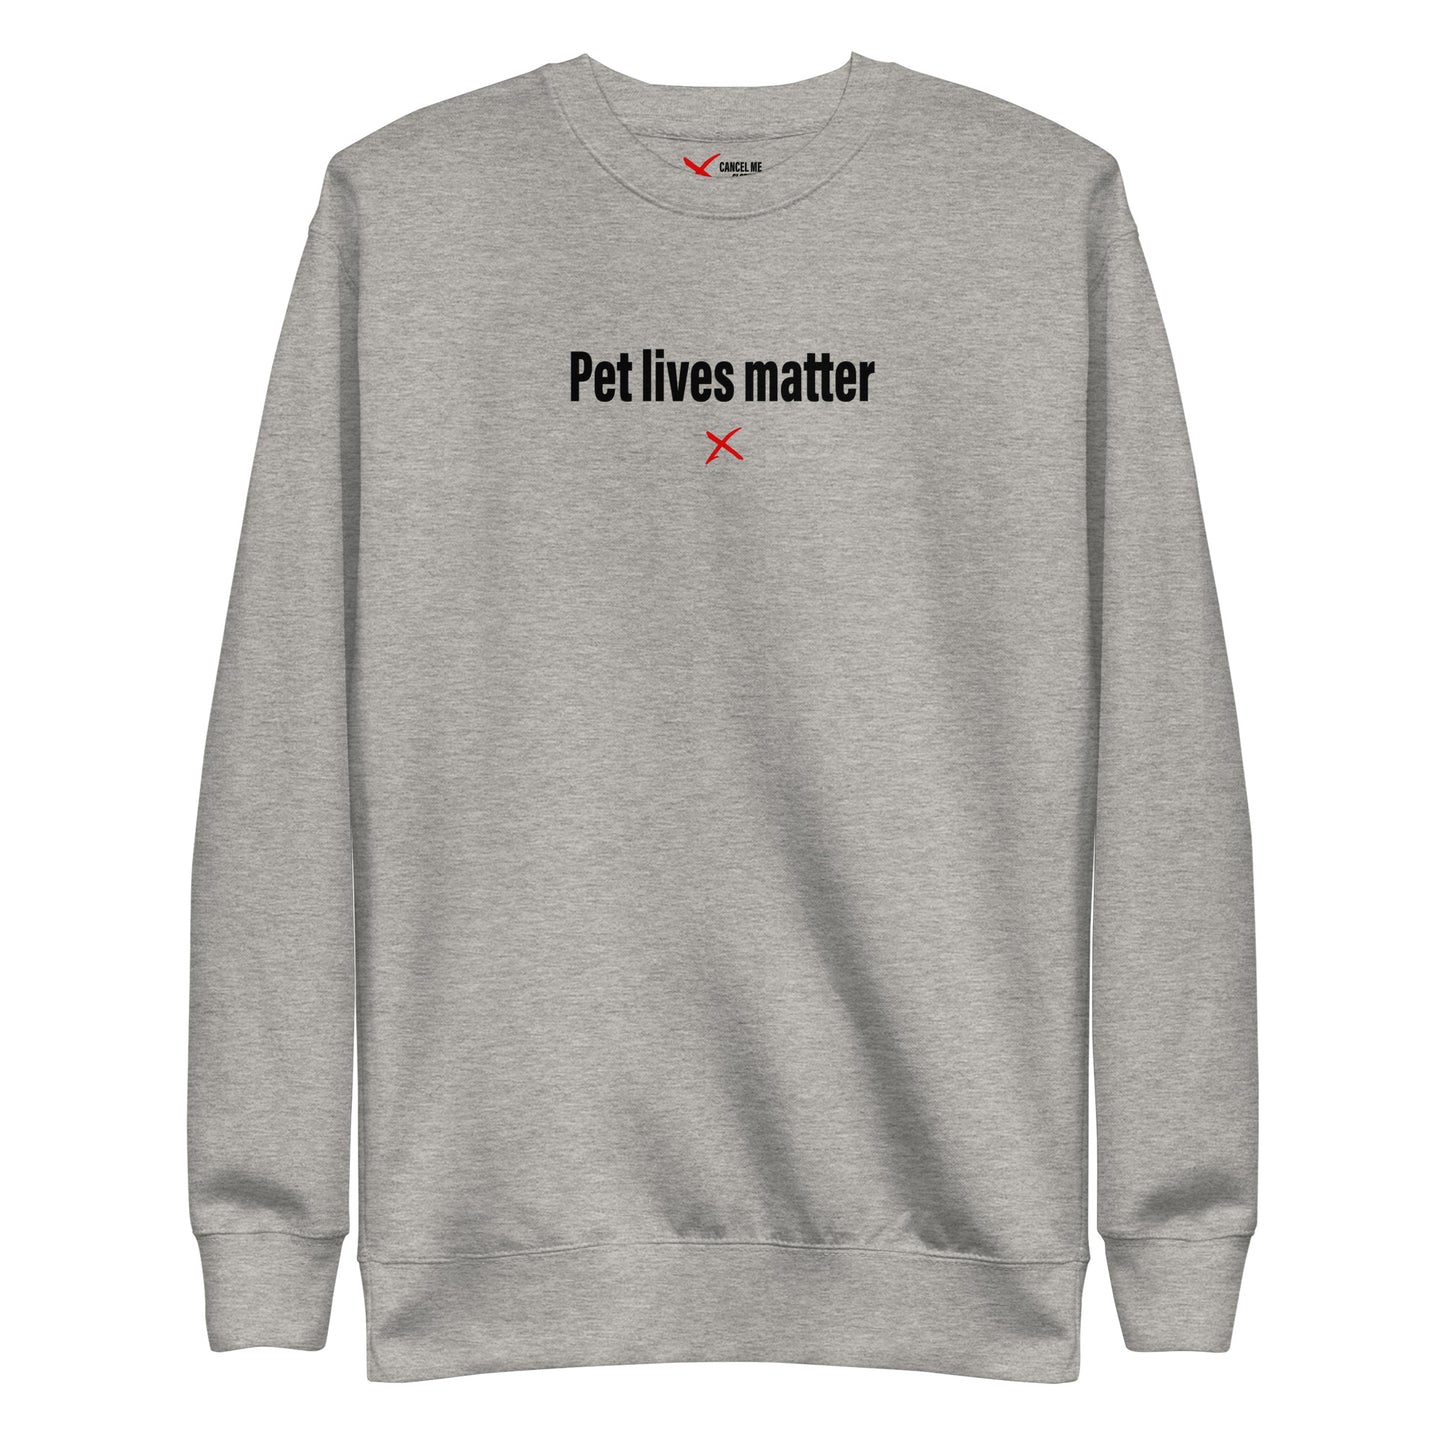 Pet lives matter - Sweatshirt